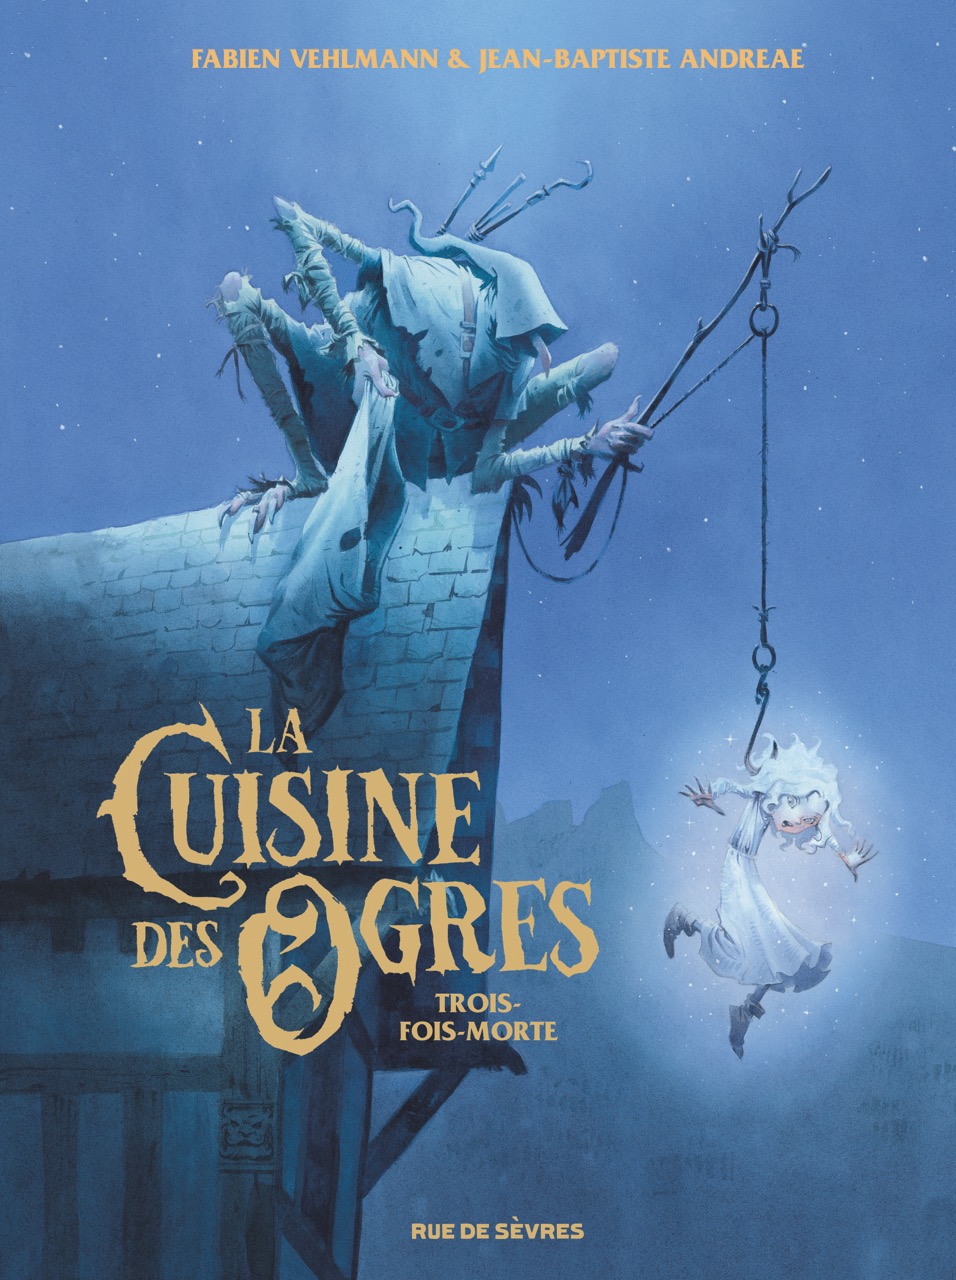 Couverture BD La Cuisine des Ogres, Trois-fois-morte